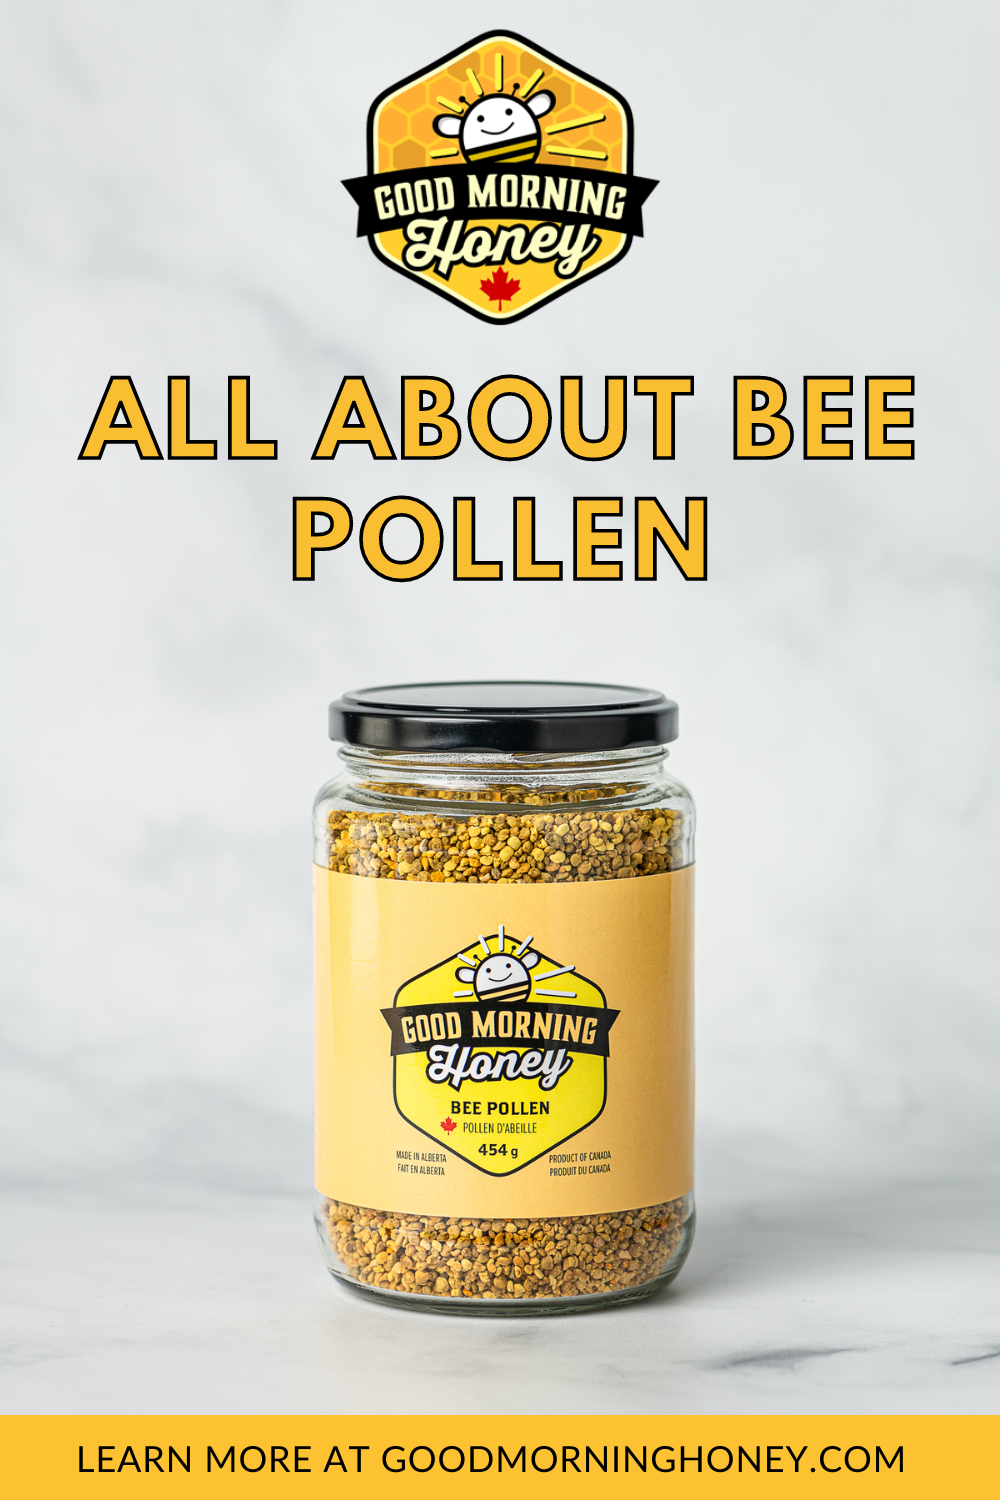 Bee pollen in a jar